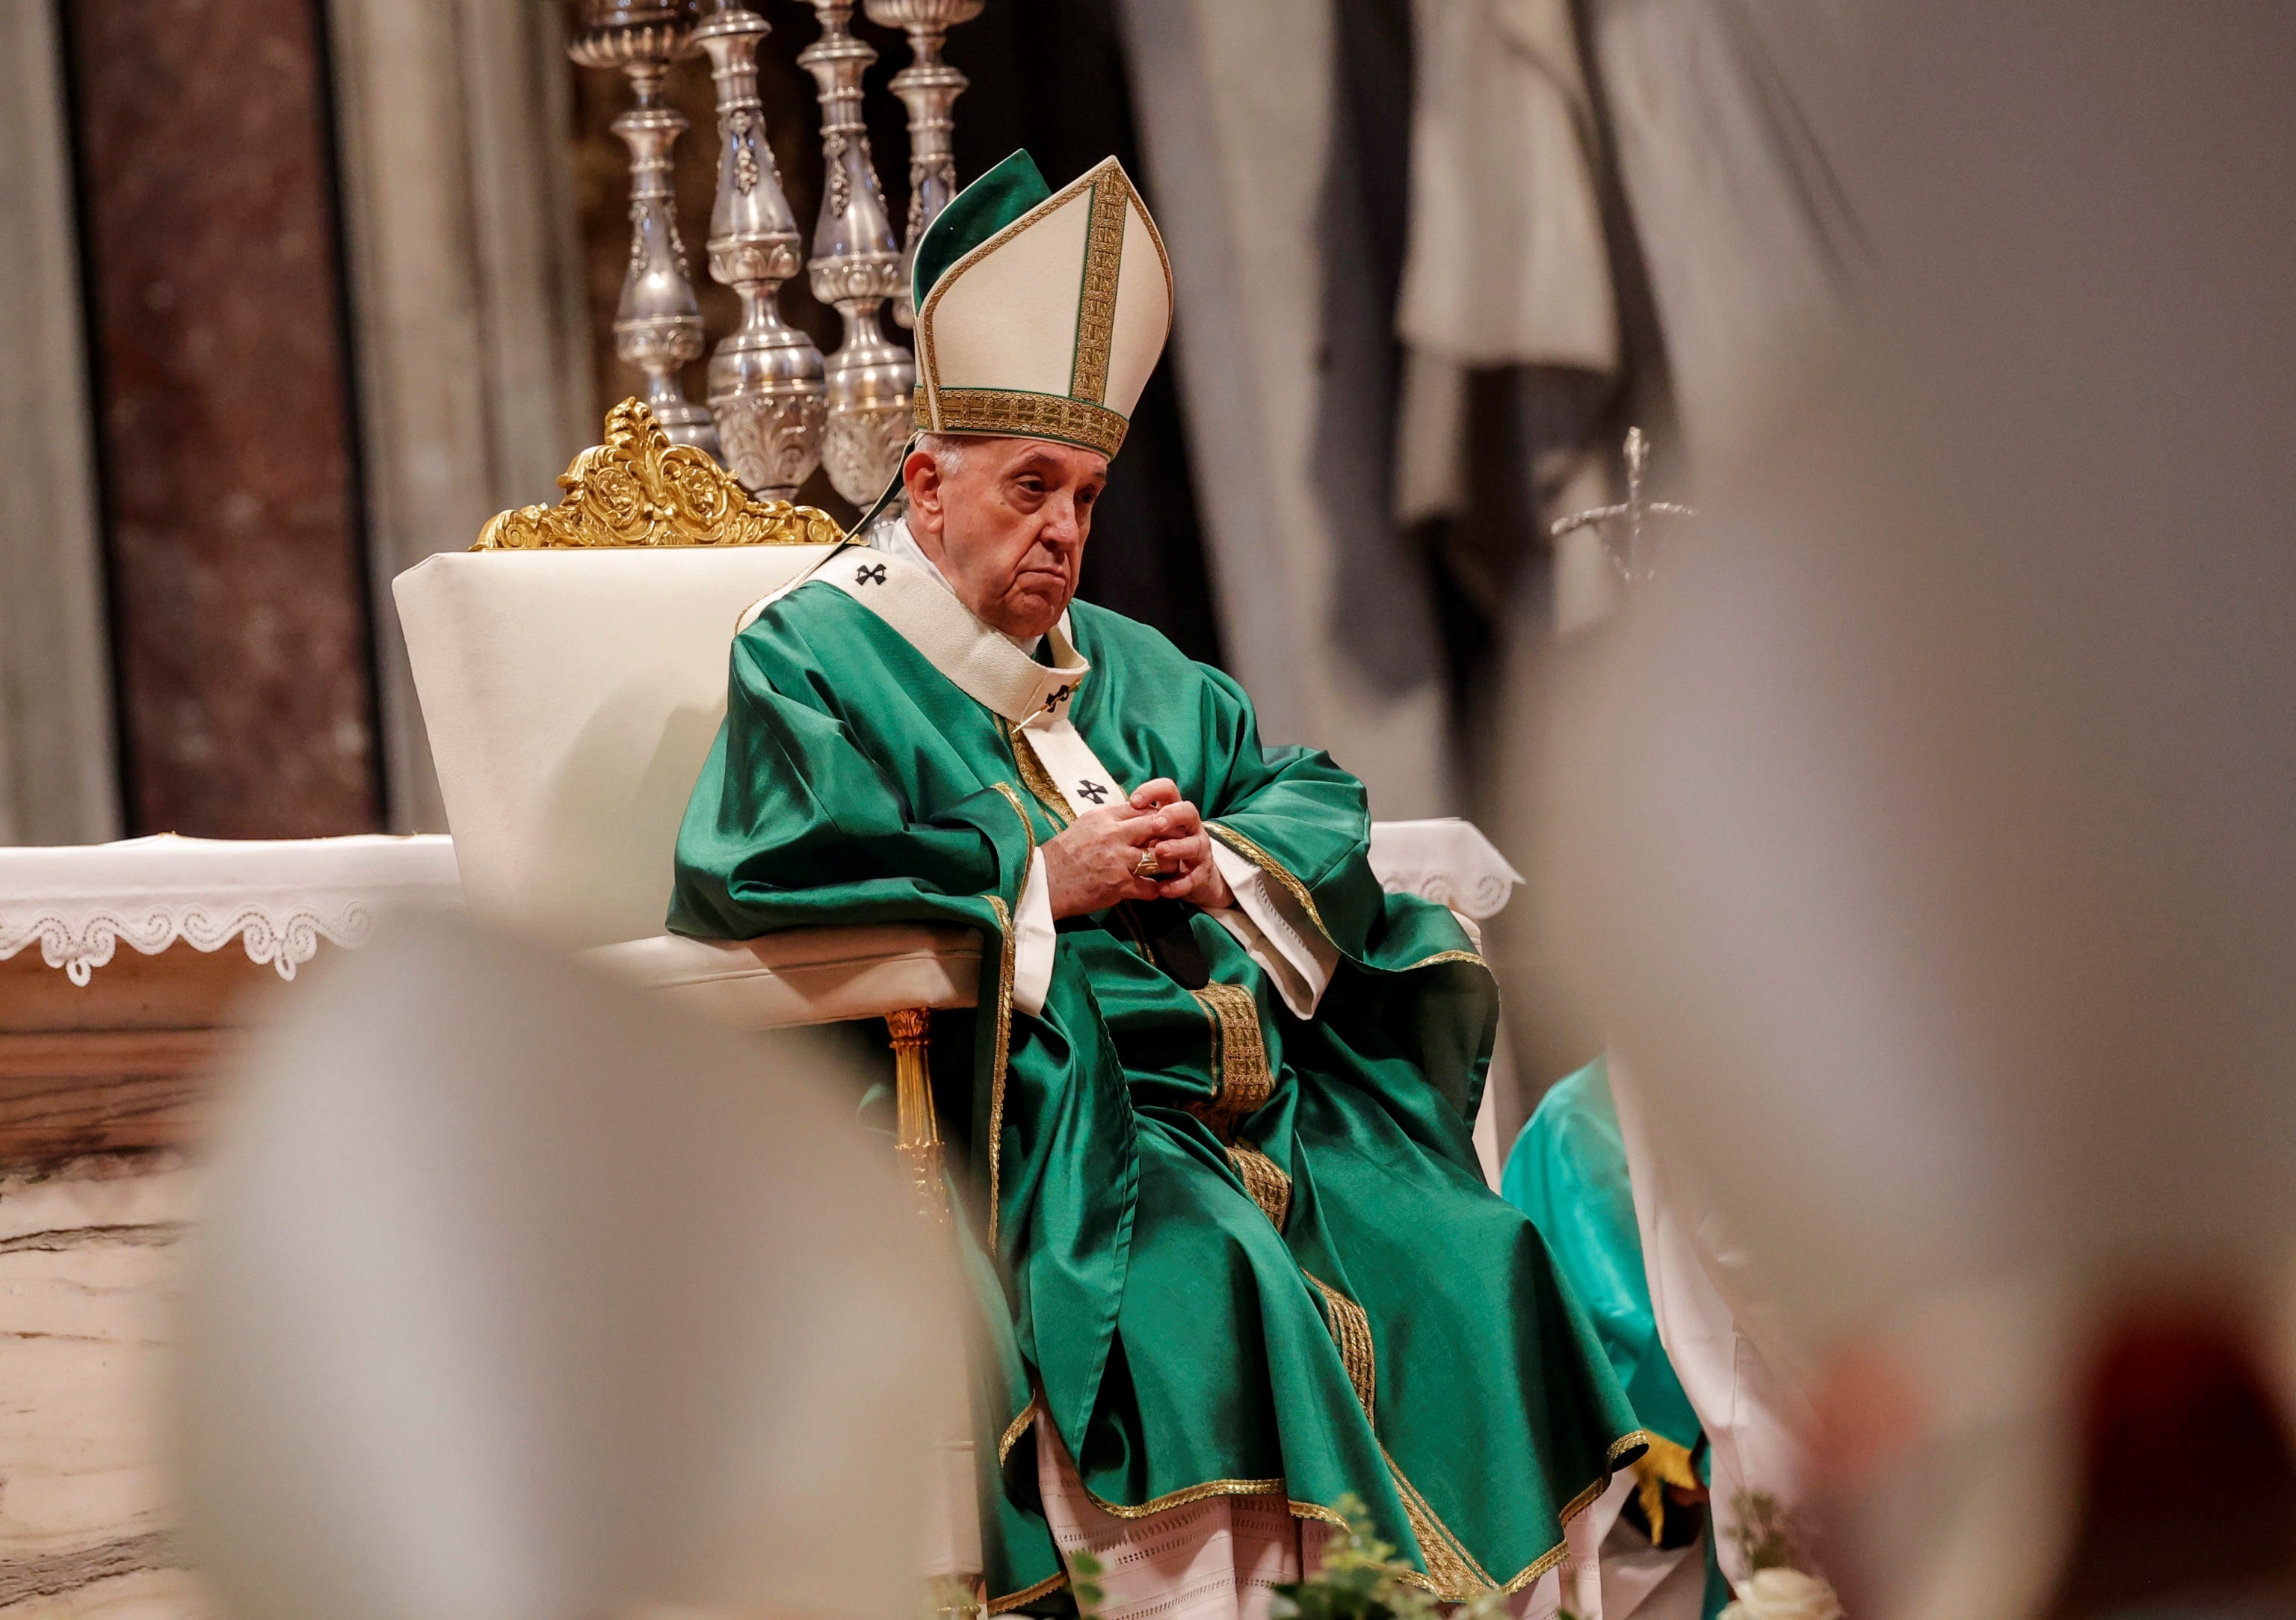 El papa Francisco pide no dejar solos ni discriminar a los enfermos mentales